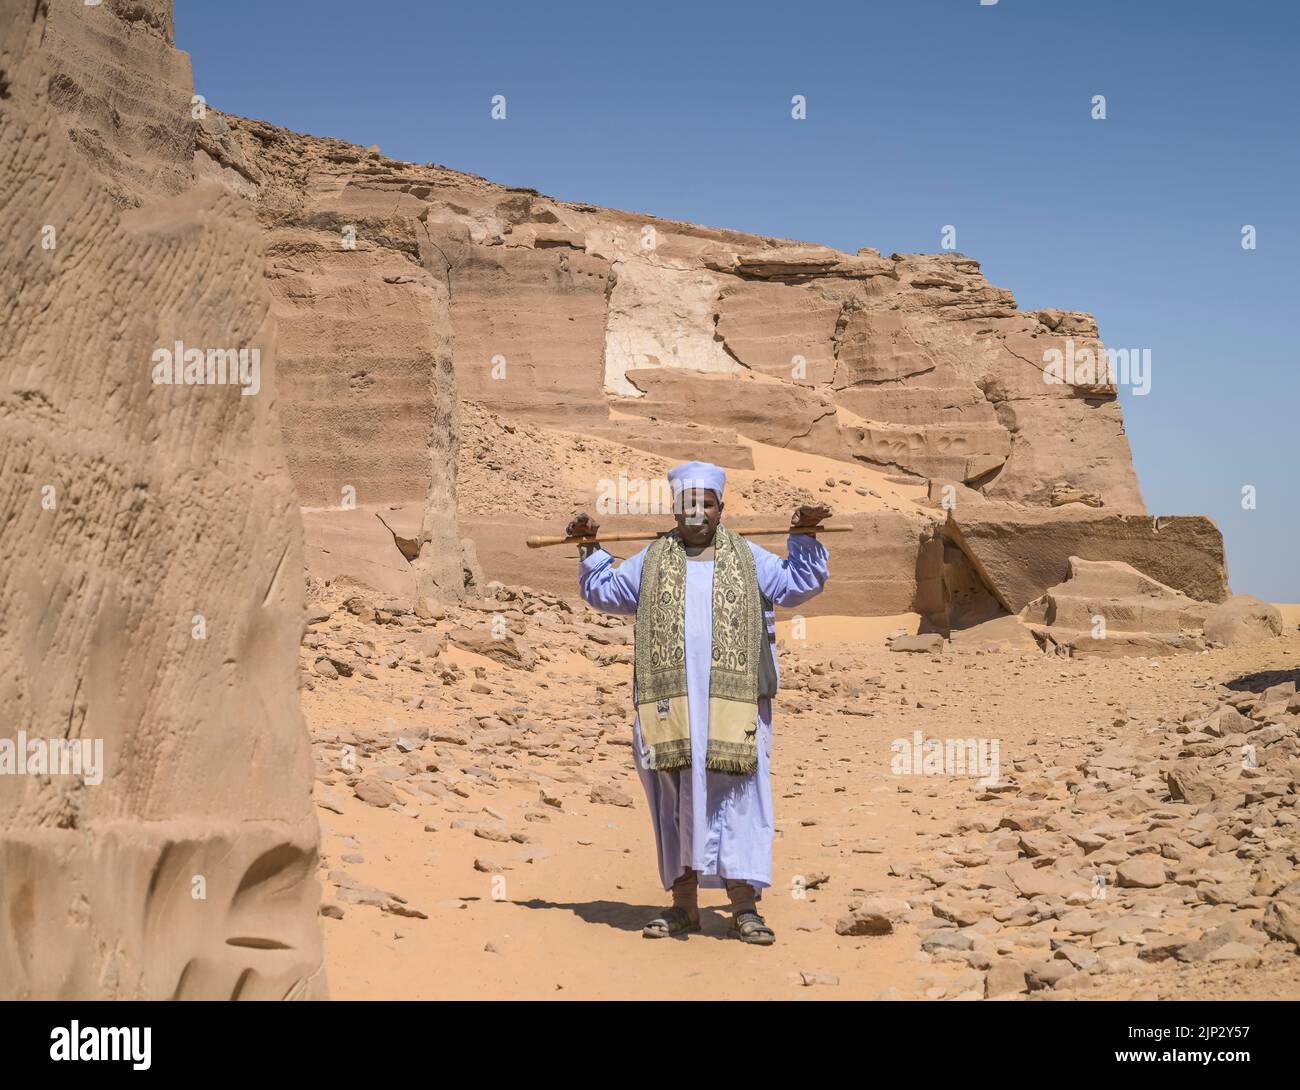 Einheimischer, Ägypter, Wachmann, Sandstein-Steinbruch Dschabal as-Silsila, Ägypten Stock Photo